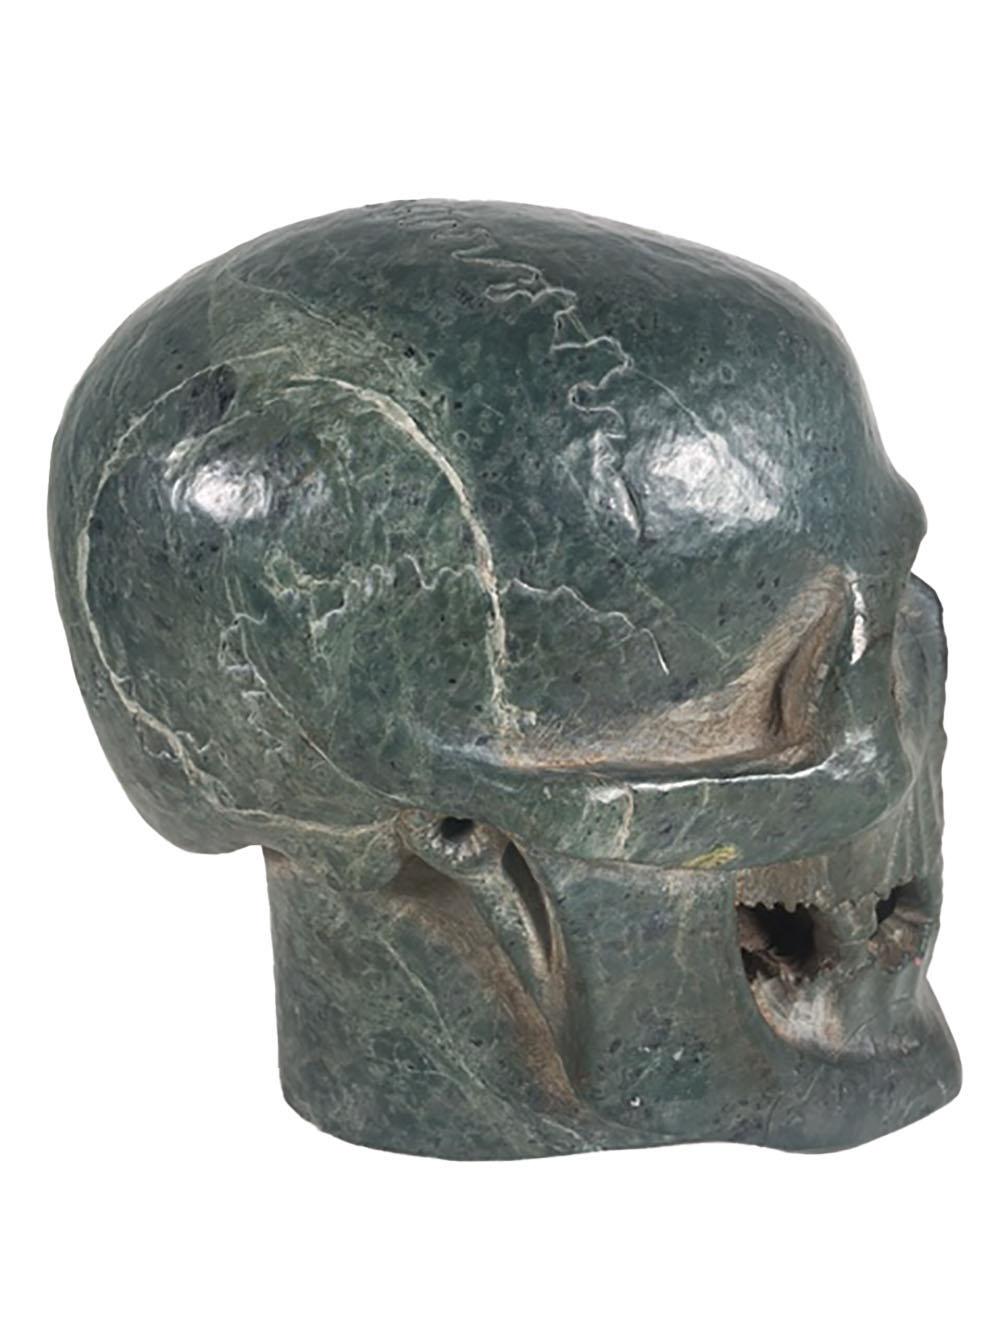 habsburg skull